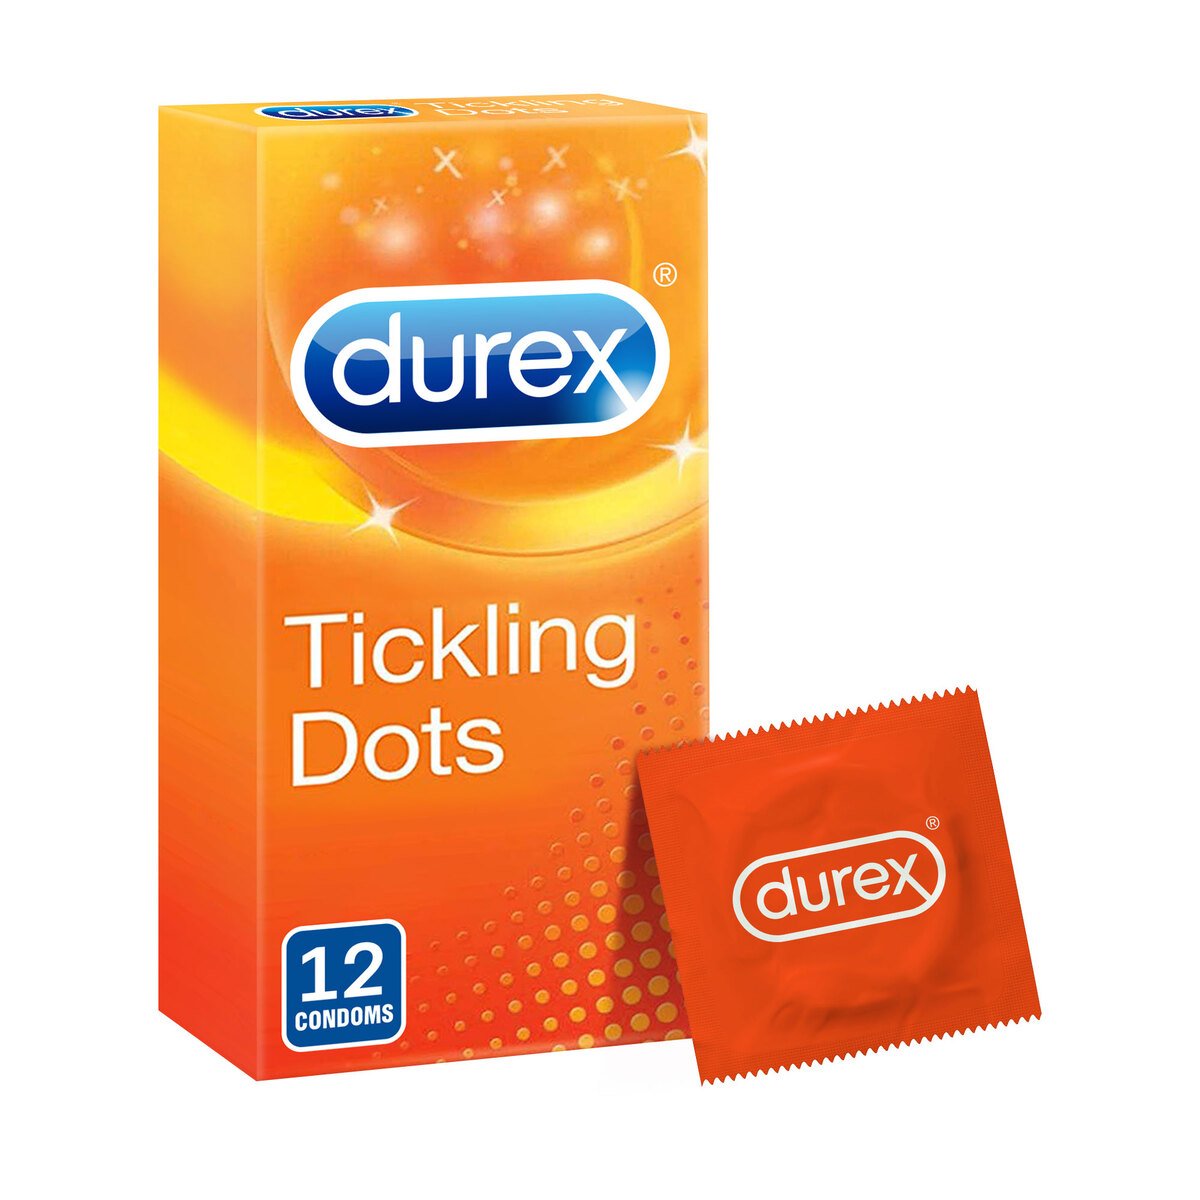 Durex Tickling Dots Condoms 12 pcs